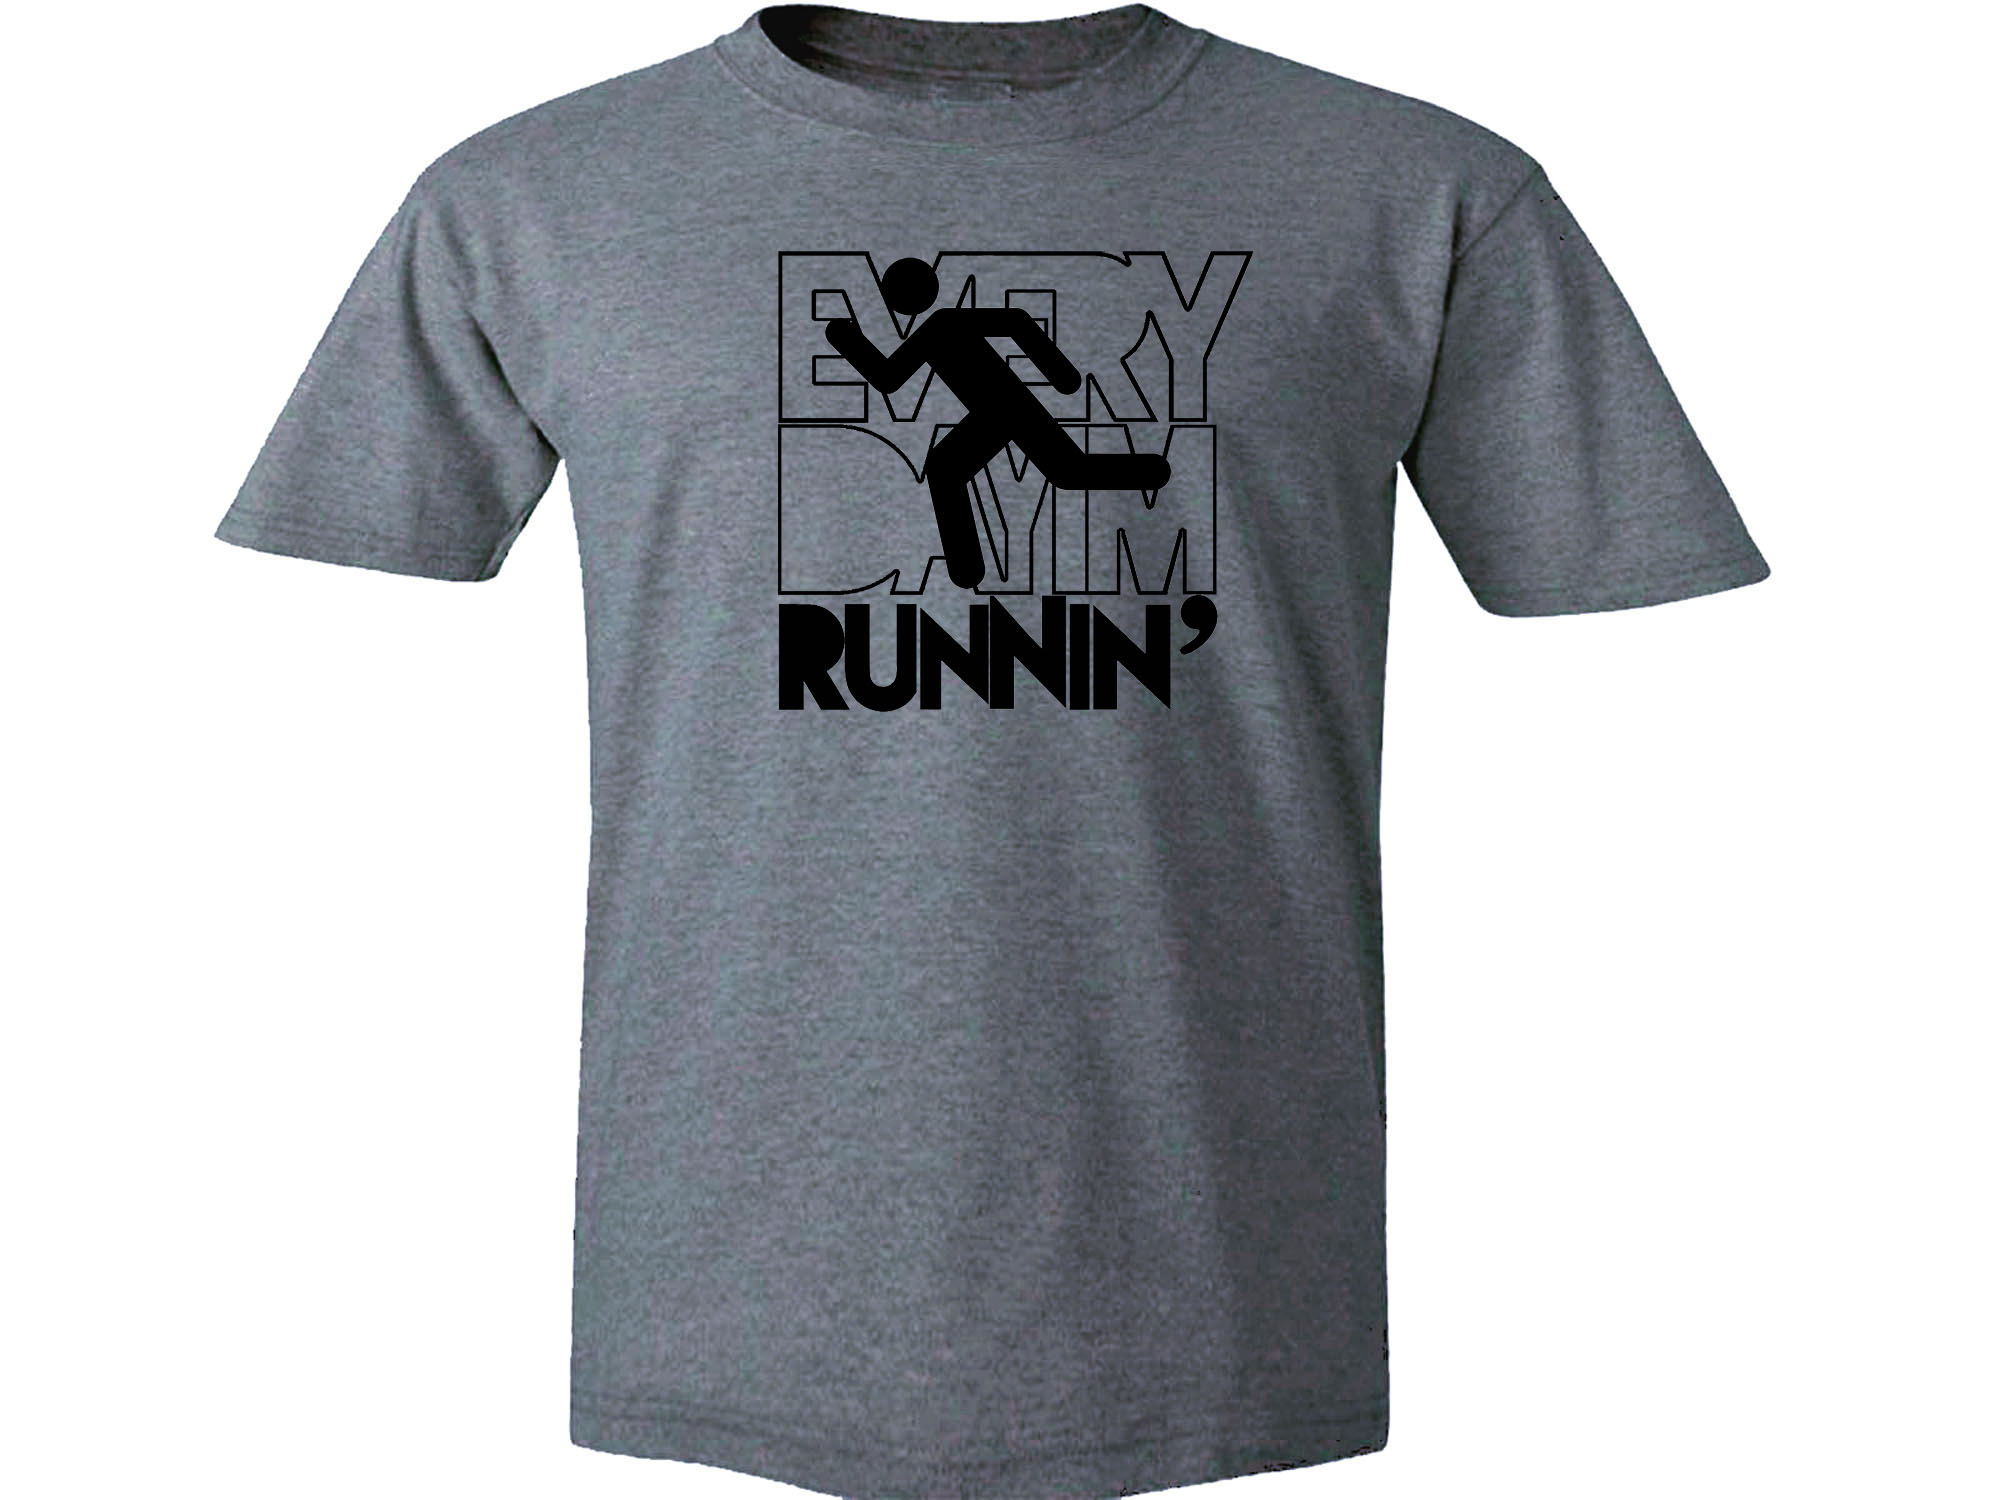 Everyday I'm runnin' funny parody runnin' gray t-shirt